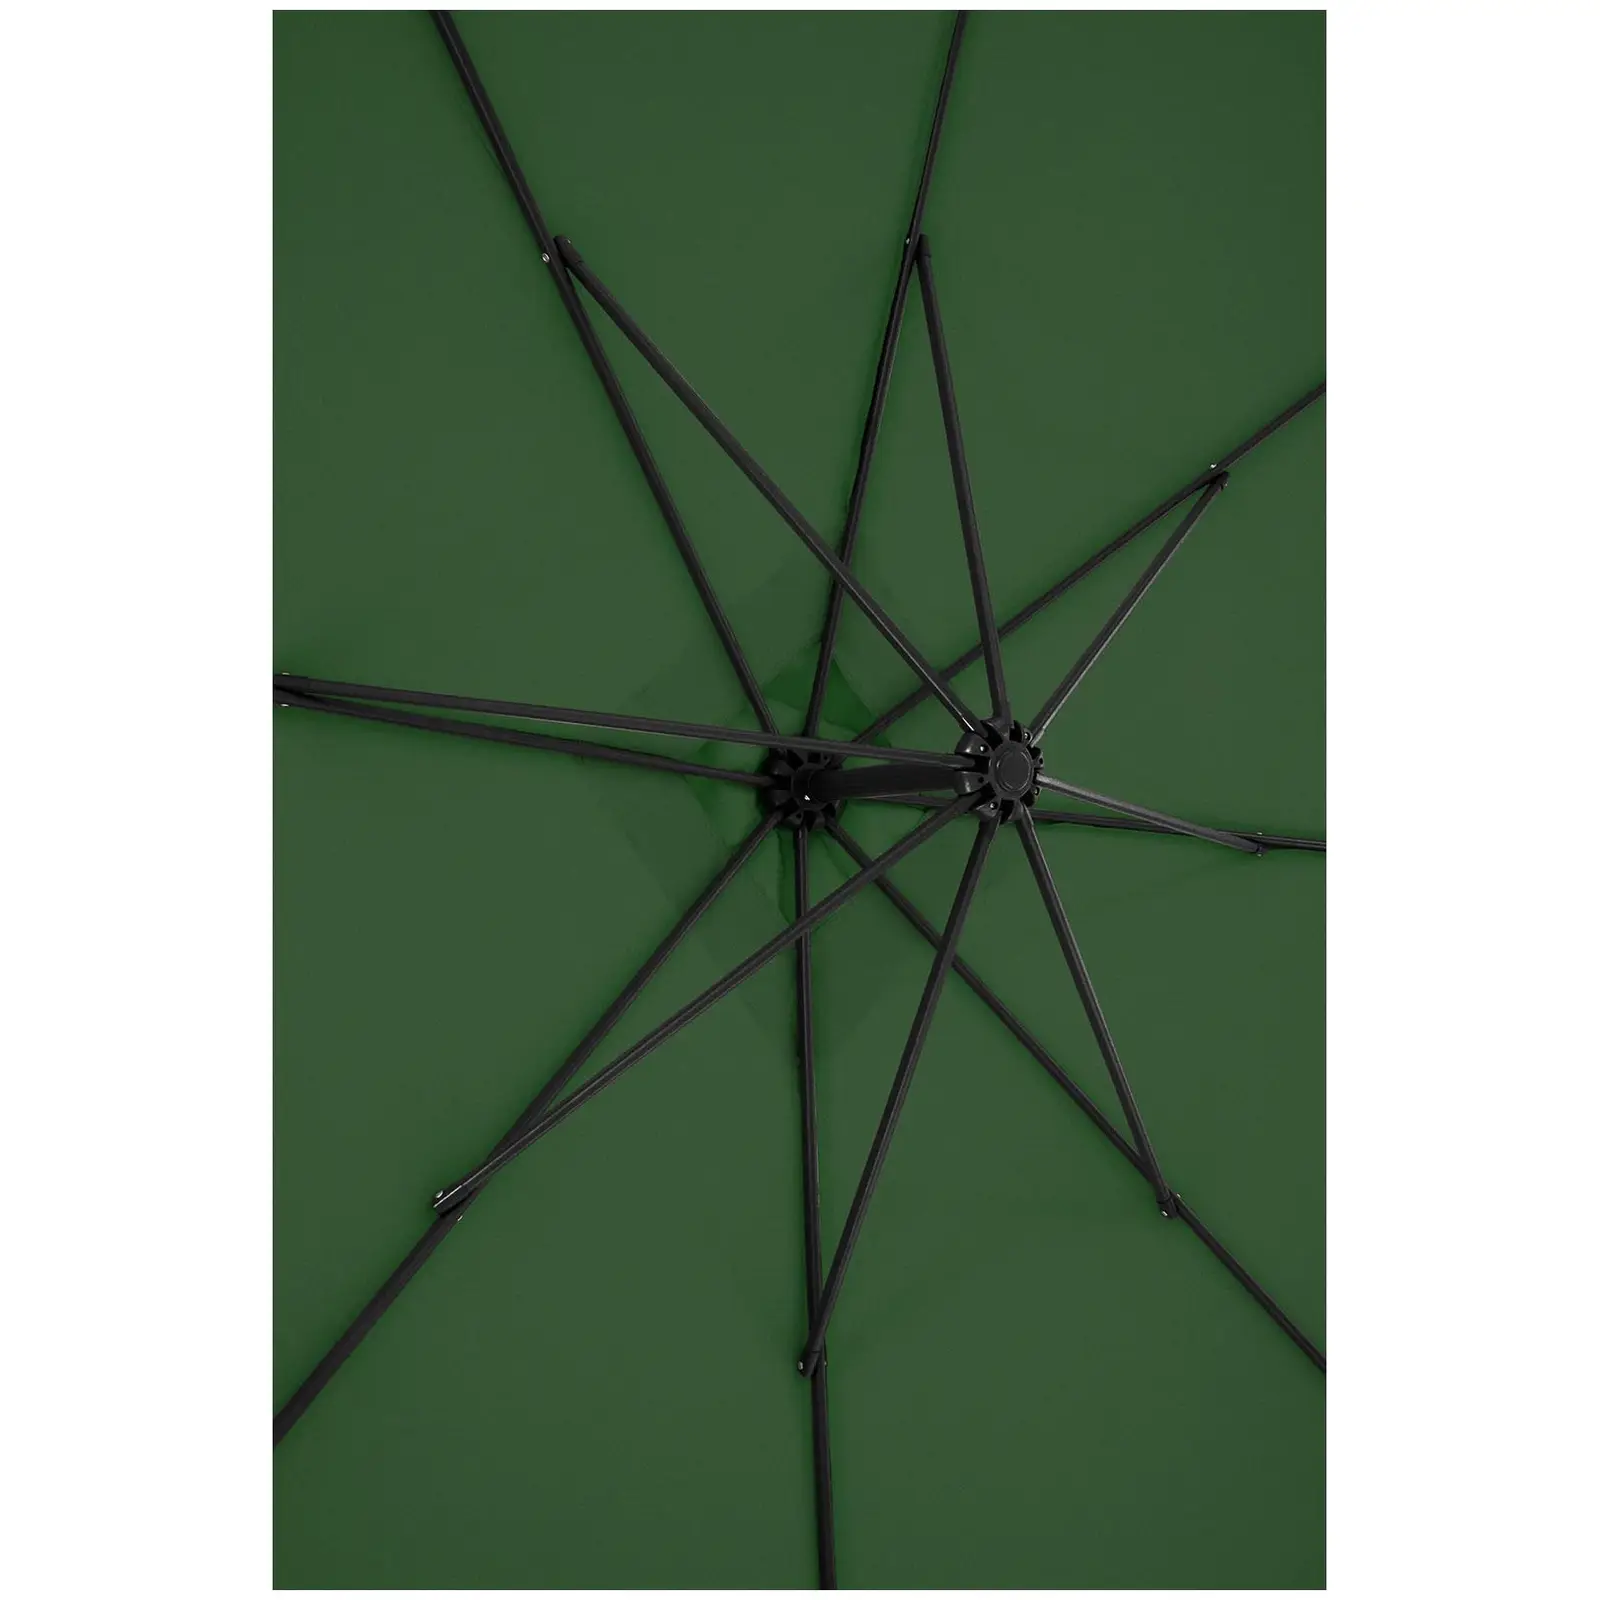 Andrahandssortering Hängparasoll - grönt - rektangulärt - 250 x 250 cm - kan lutas